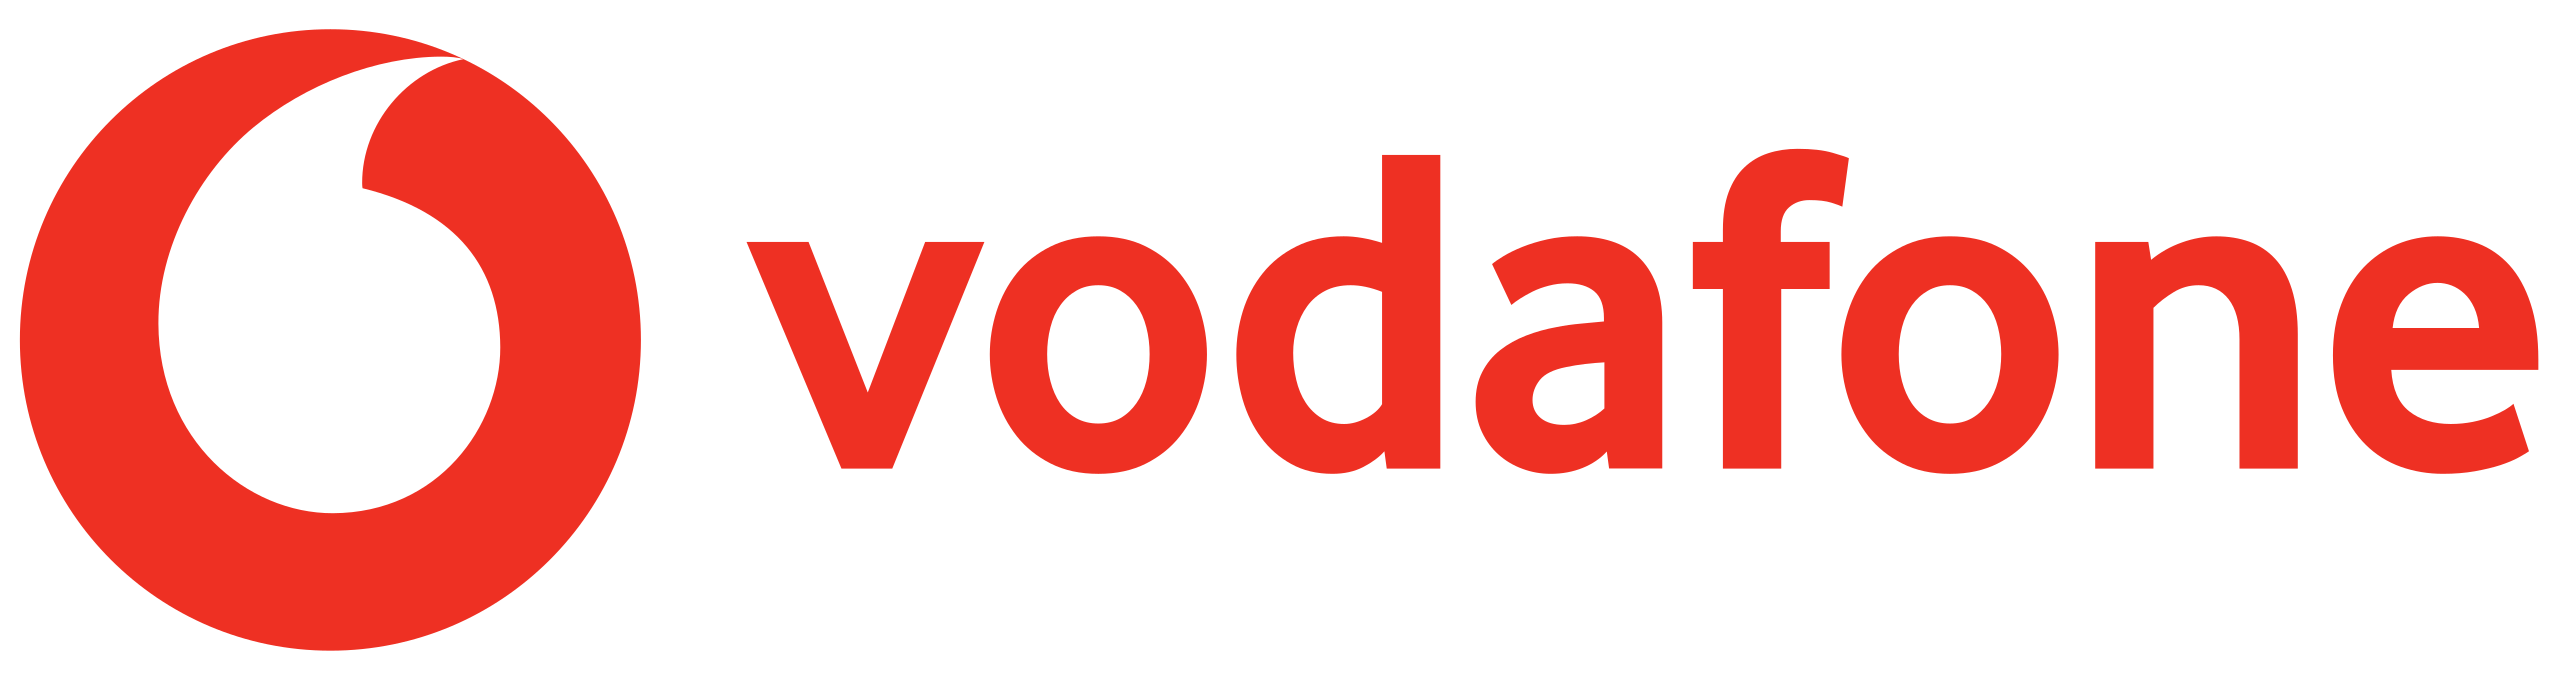 Logo of Vodafone Co